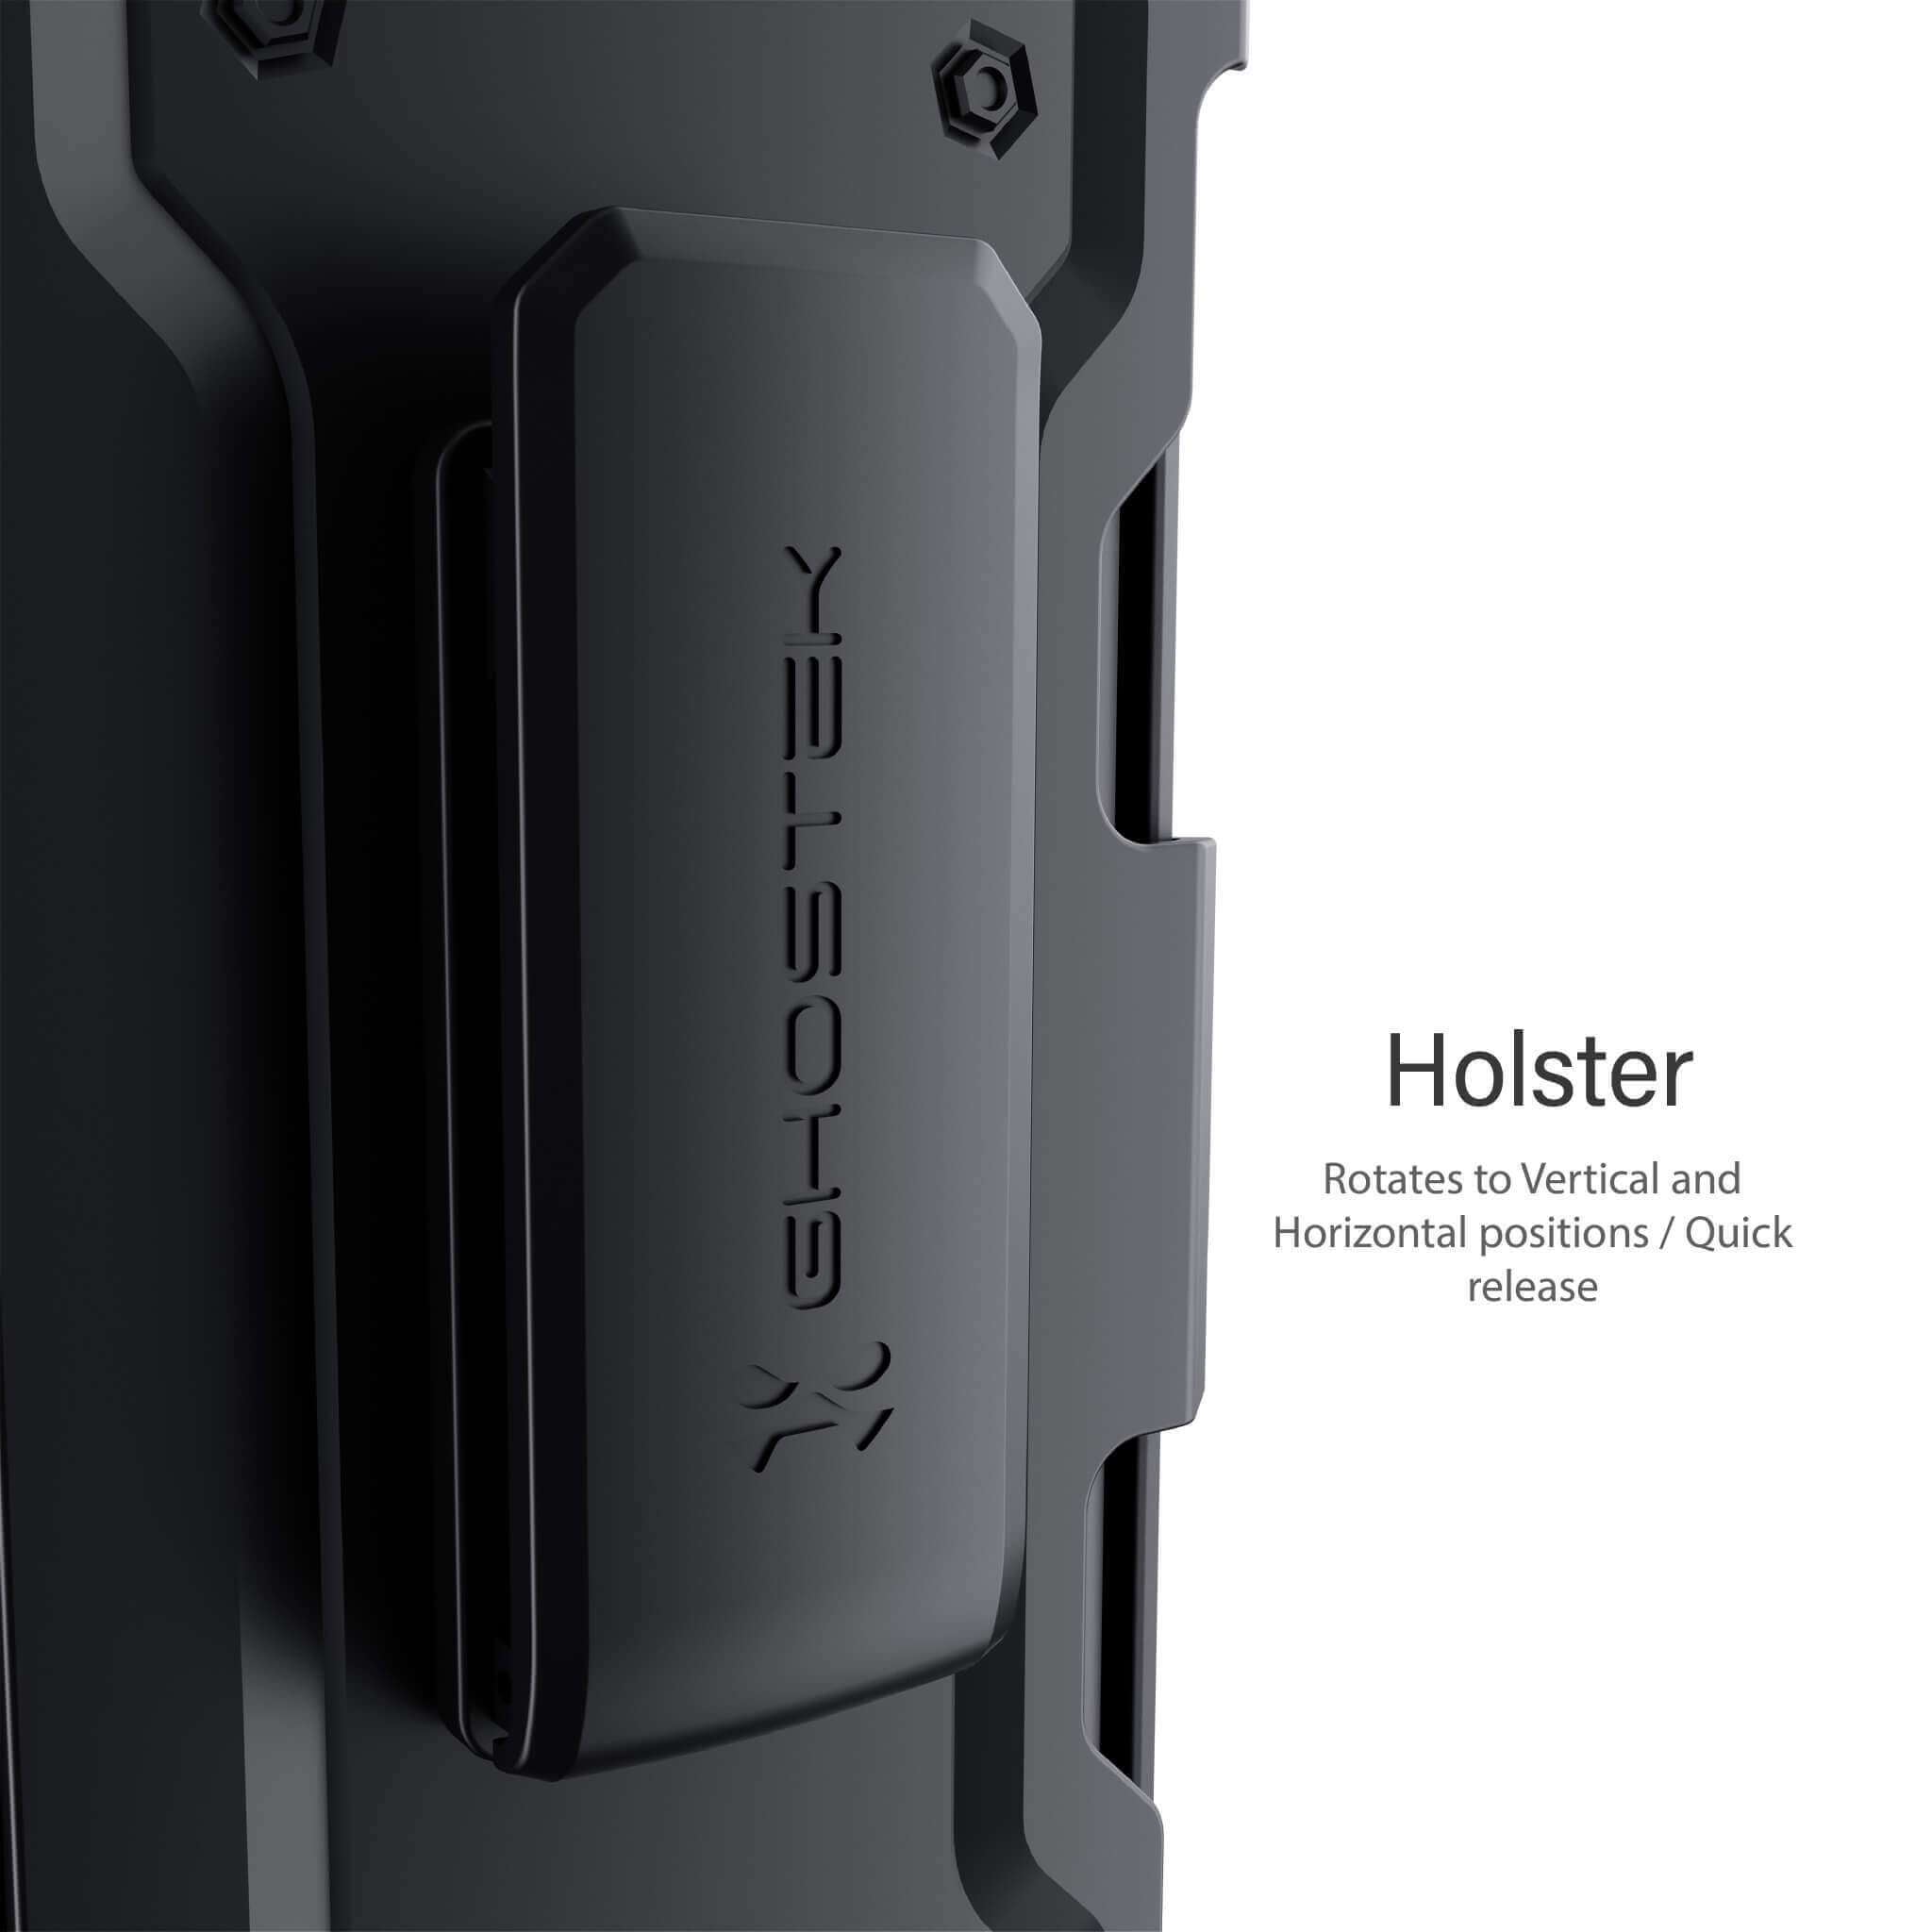 Iron Armor Series iPhone 7 Plus / 8 Plus Cases with Belt Clip